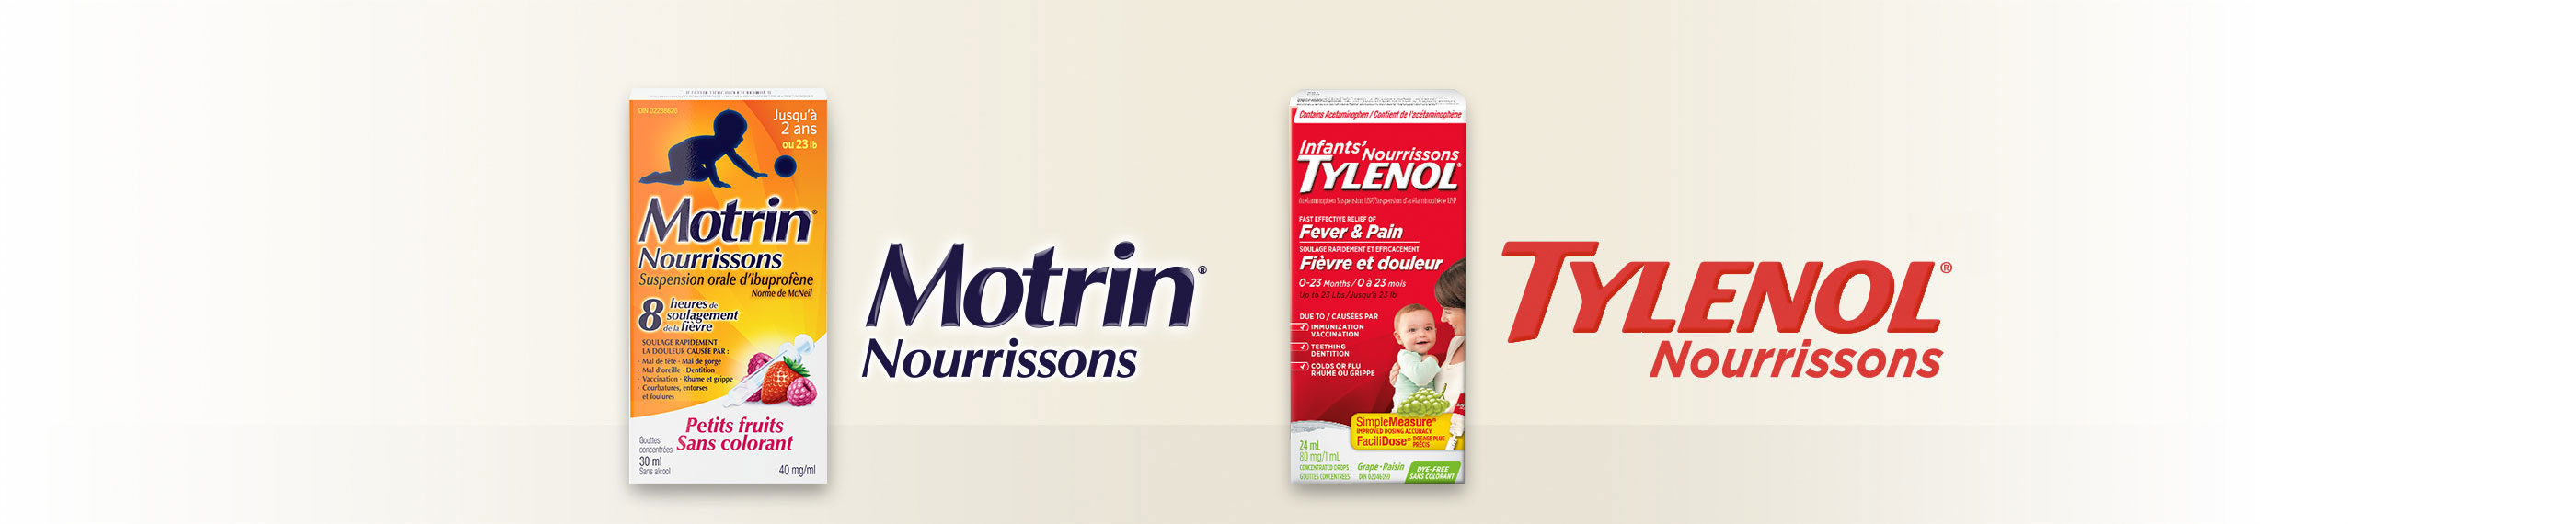 Produits Tylenol et Motrin pour le soulagement de la fièvre et de la douleur chez les nourrissons